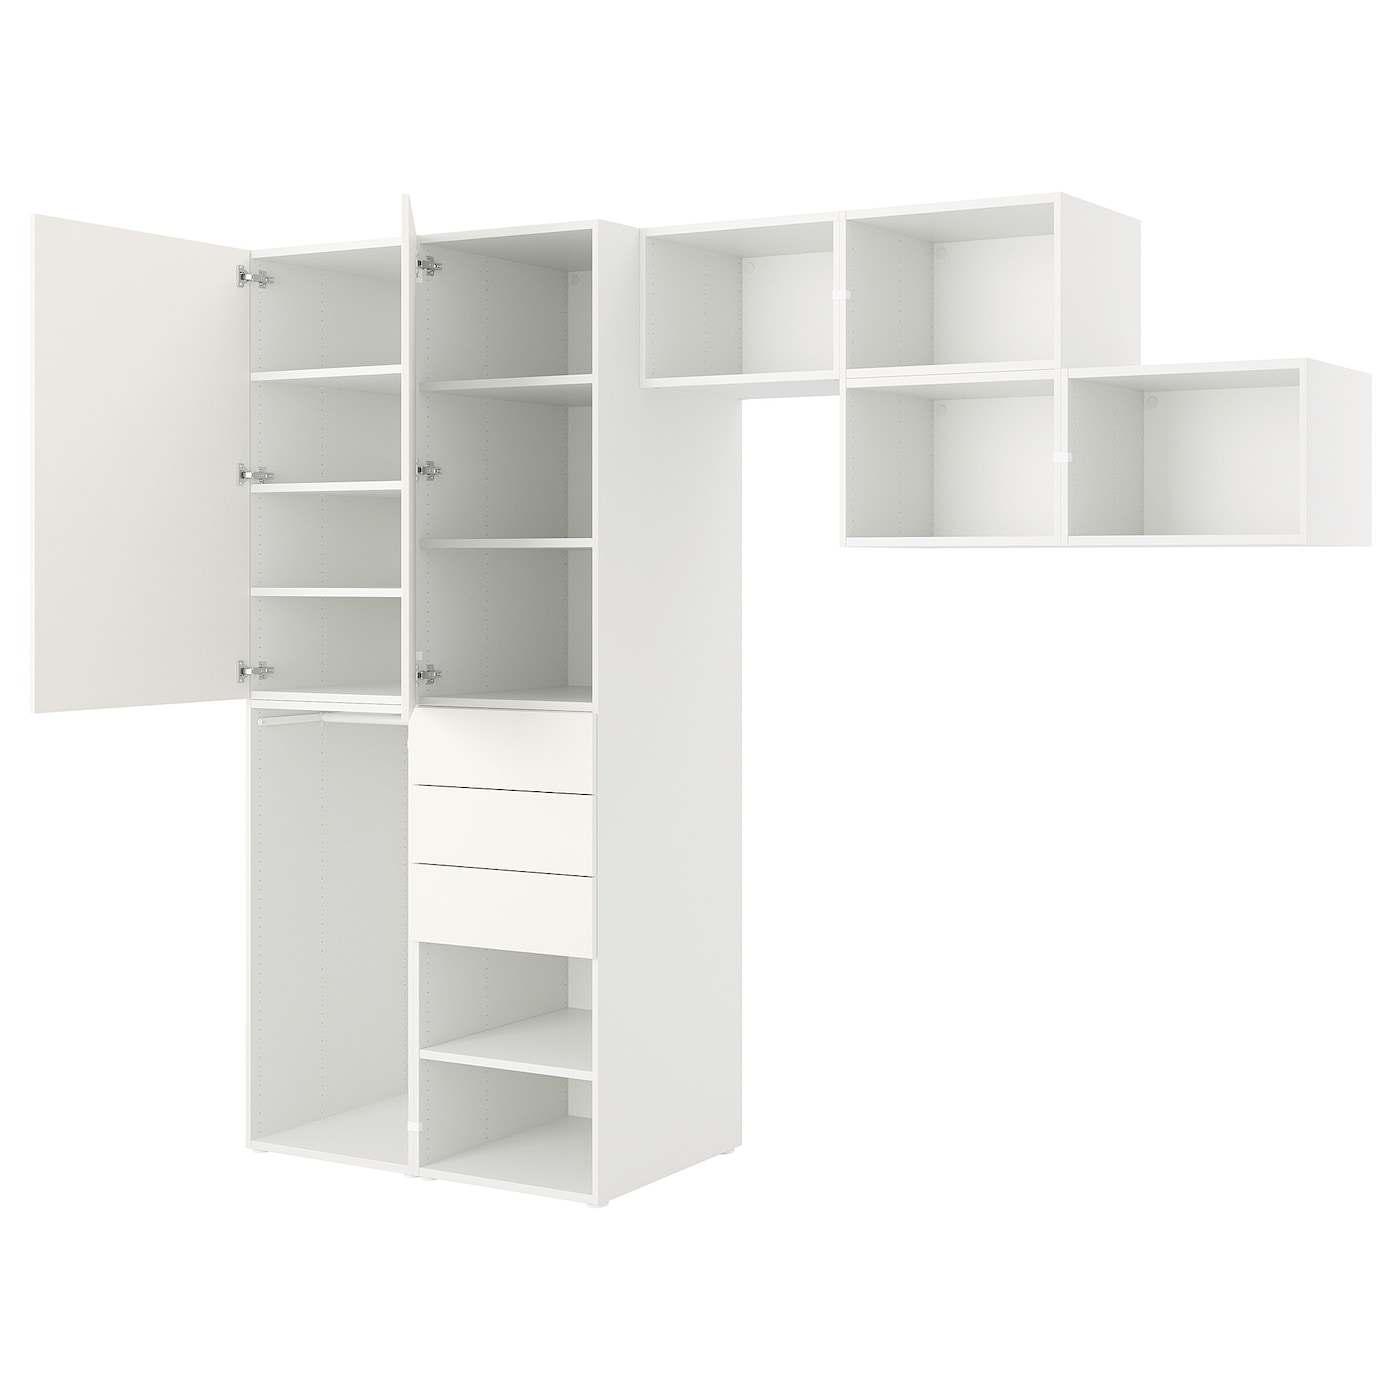 Платяной шкаф - PLATSA/IKEA/ ПЛАТСА ИКЕА,300x57x241 см, белый